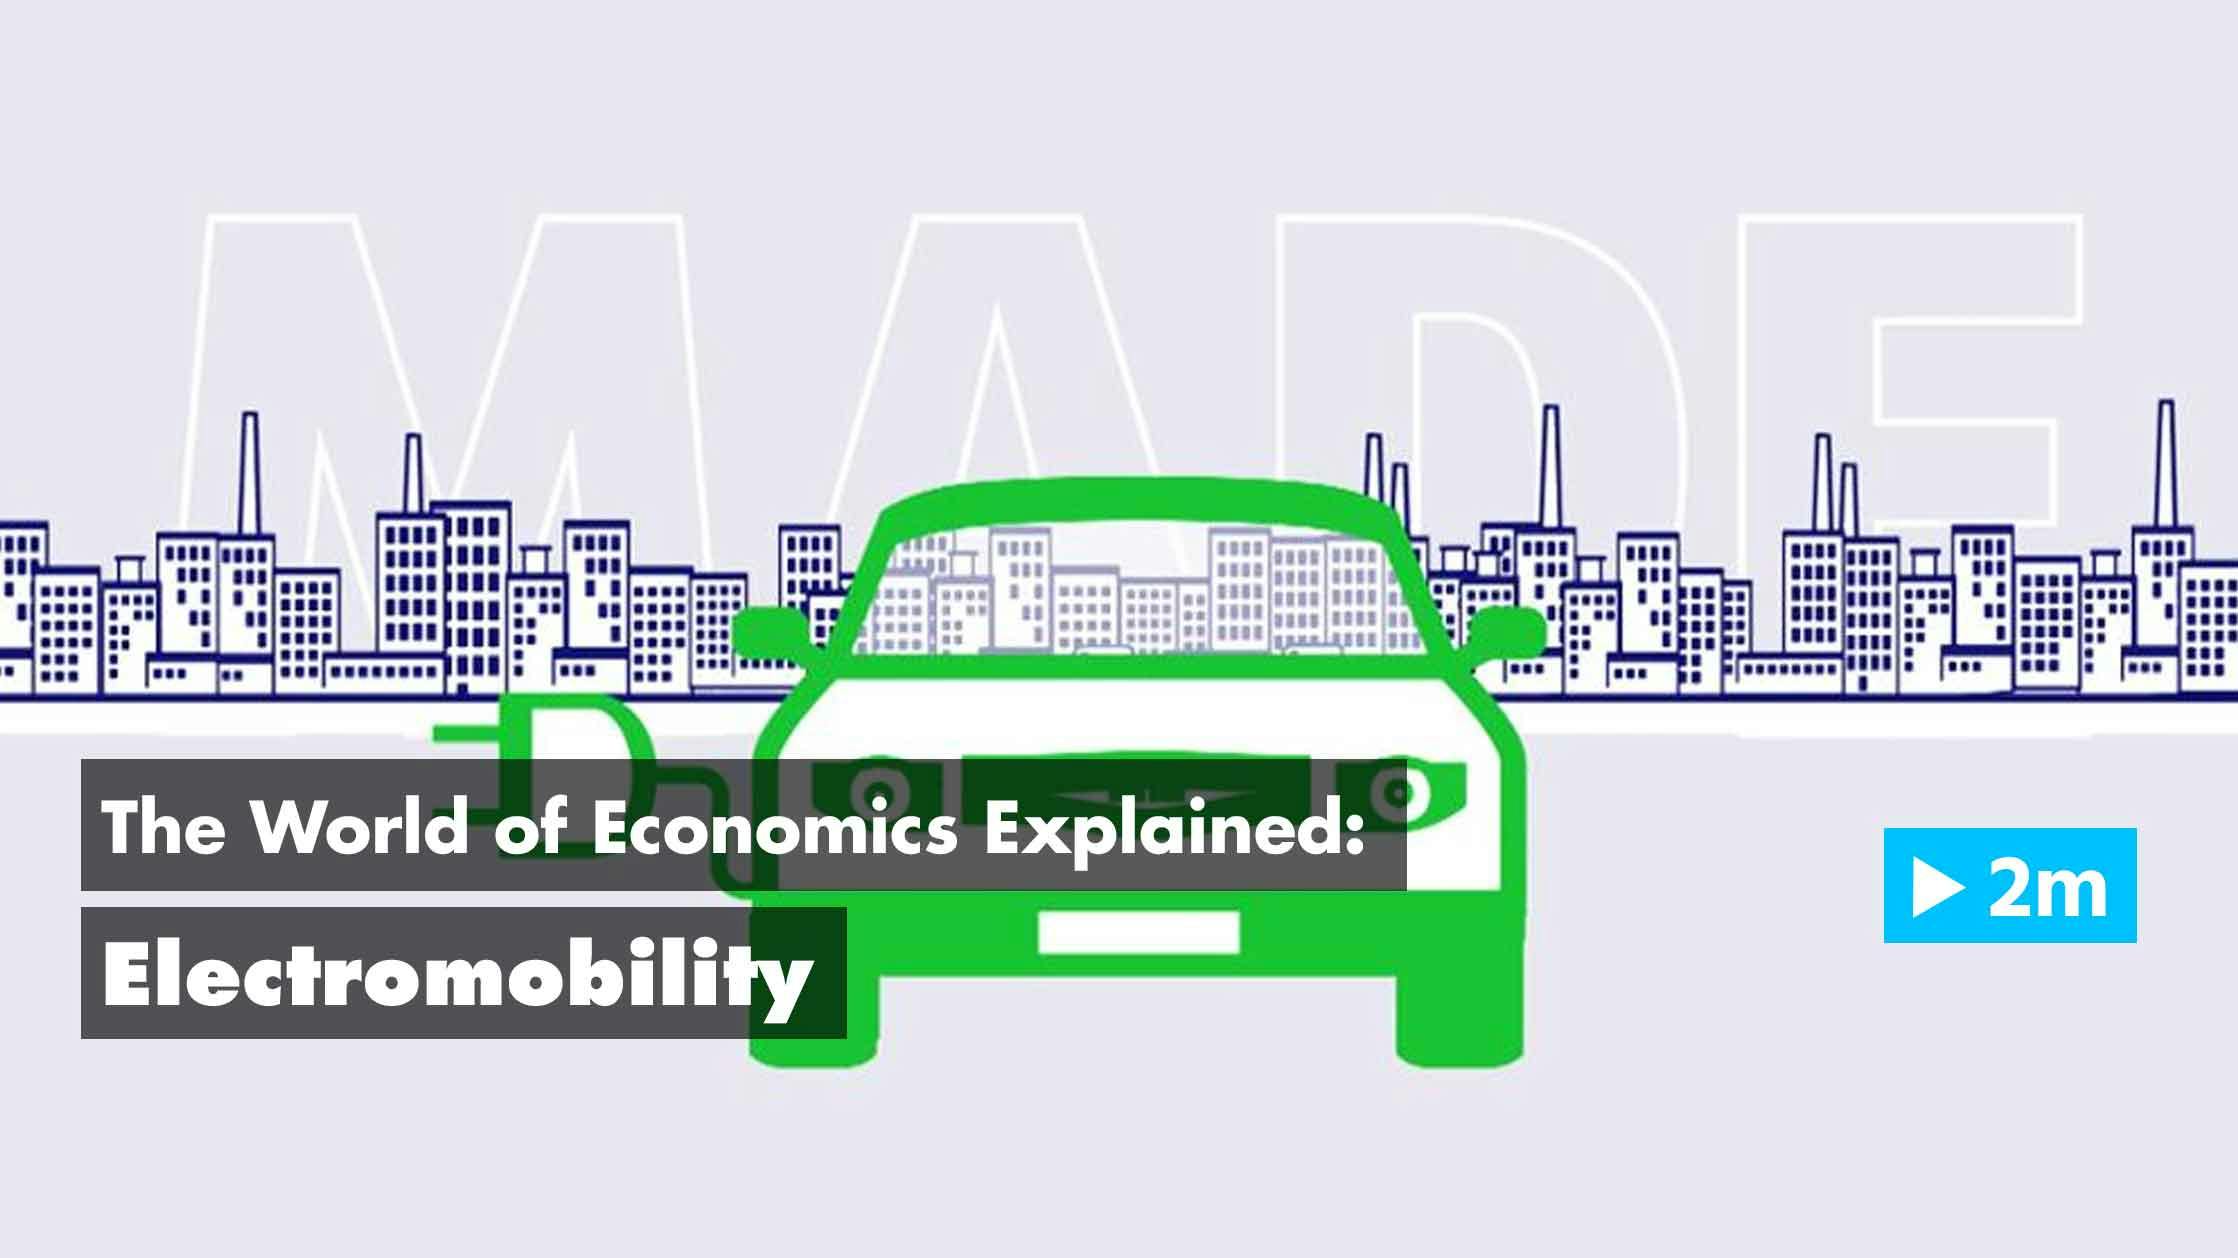 The World of Economics Explained: Electromobility